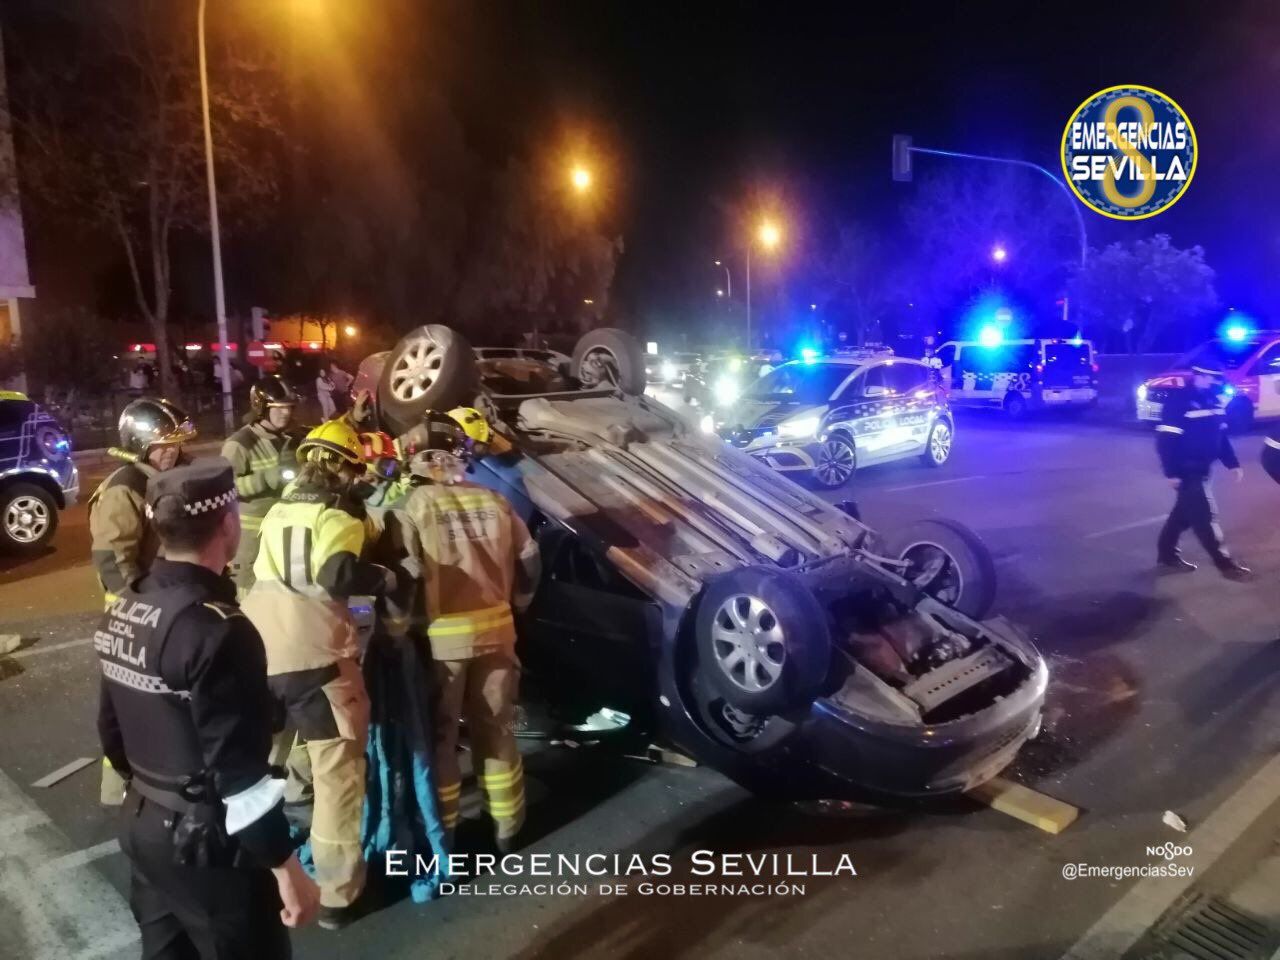 Herido grave tras ser rescatado al volcar su vehículo tras una fuerte colisión en Sevilla.